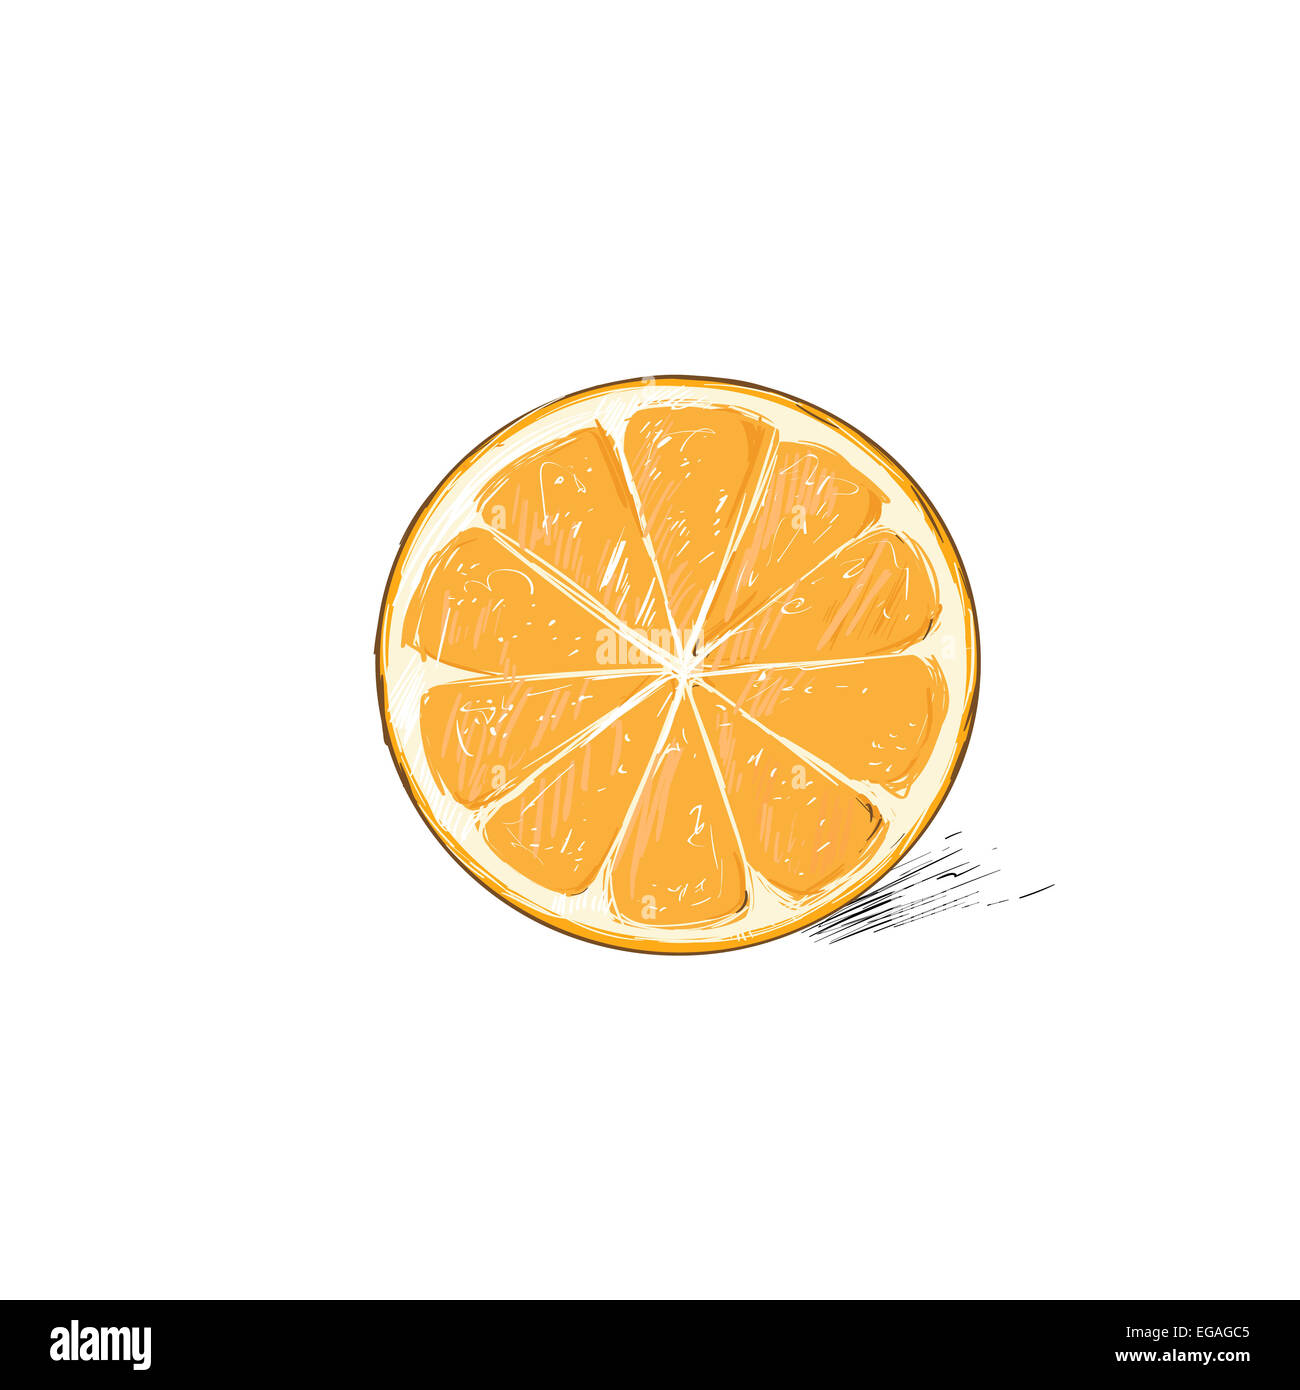 Với hương vị tươi trẻ và mùi thơm đặc trưng của mùa hè, quả cam là món ăn yêu thích của nhiều người. Tận hưởng vẻ đẹp tuyệt vời của quả cam thông qua loạt hình ảnh đầy sức sống này. Hãy cùng khám phá và trải nghiệm hương vị tuyệt vời của quả cam!